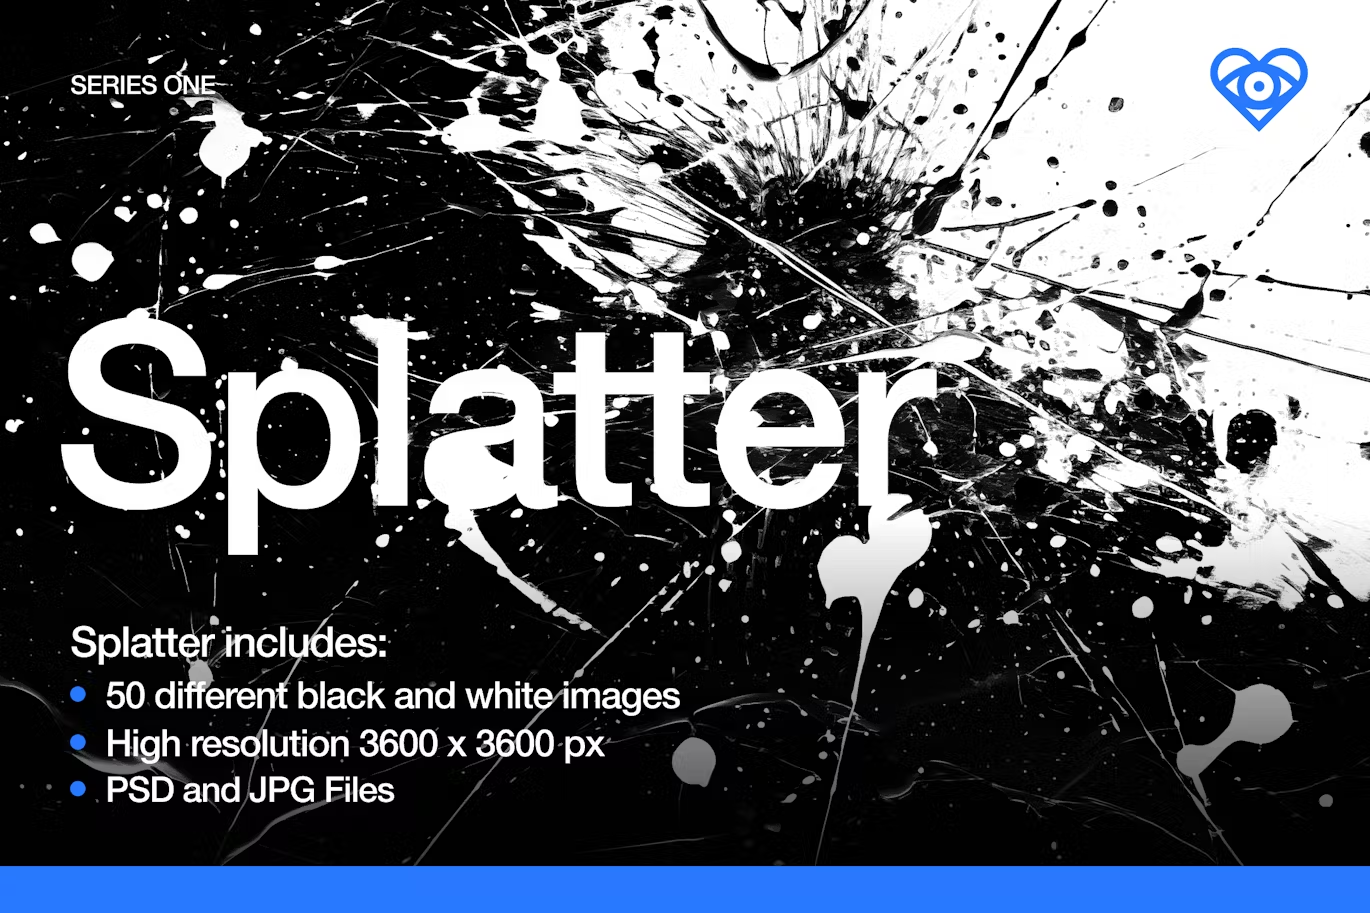 6054 黑白喷溅纹理动感艺术项目设计背景PSD素材-50 Black and White Splatter Textures